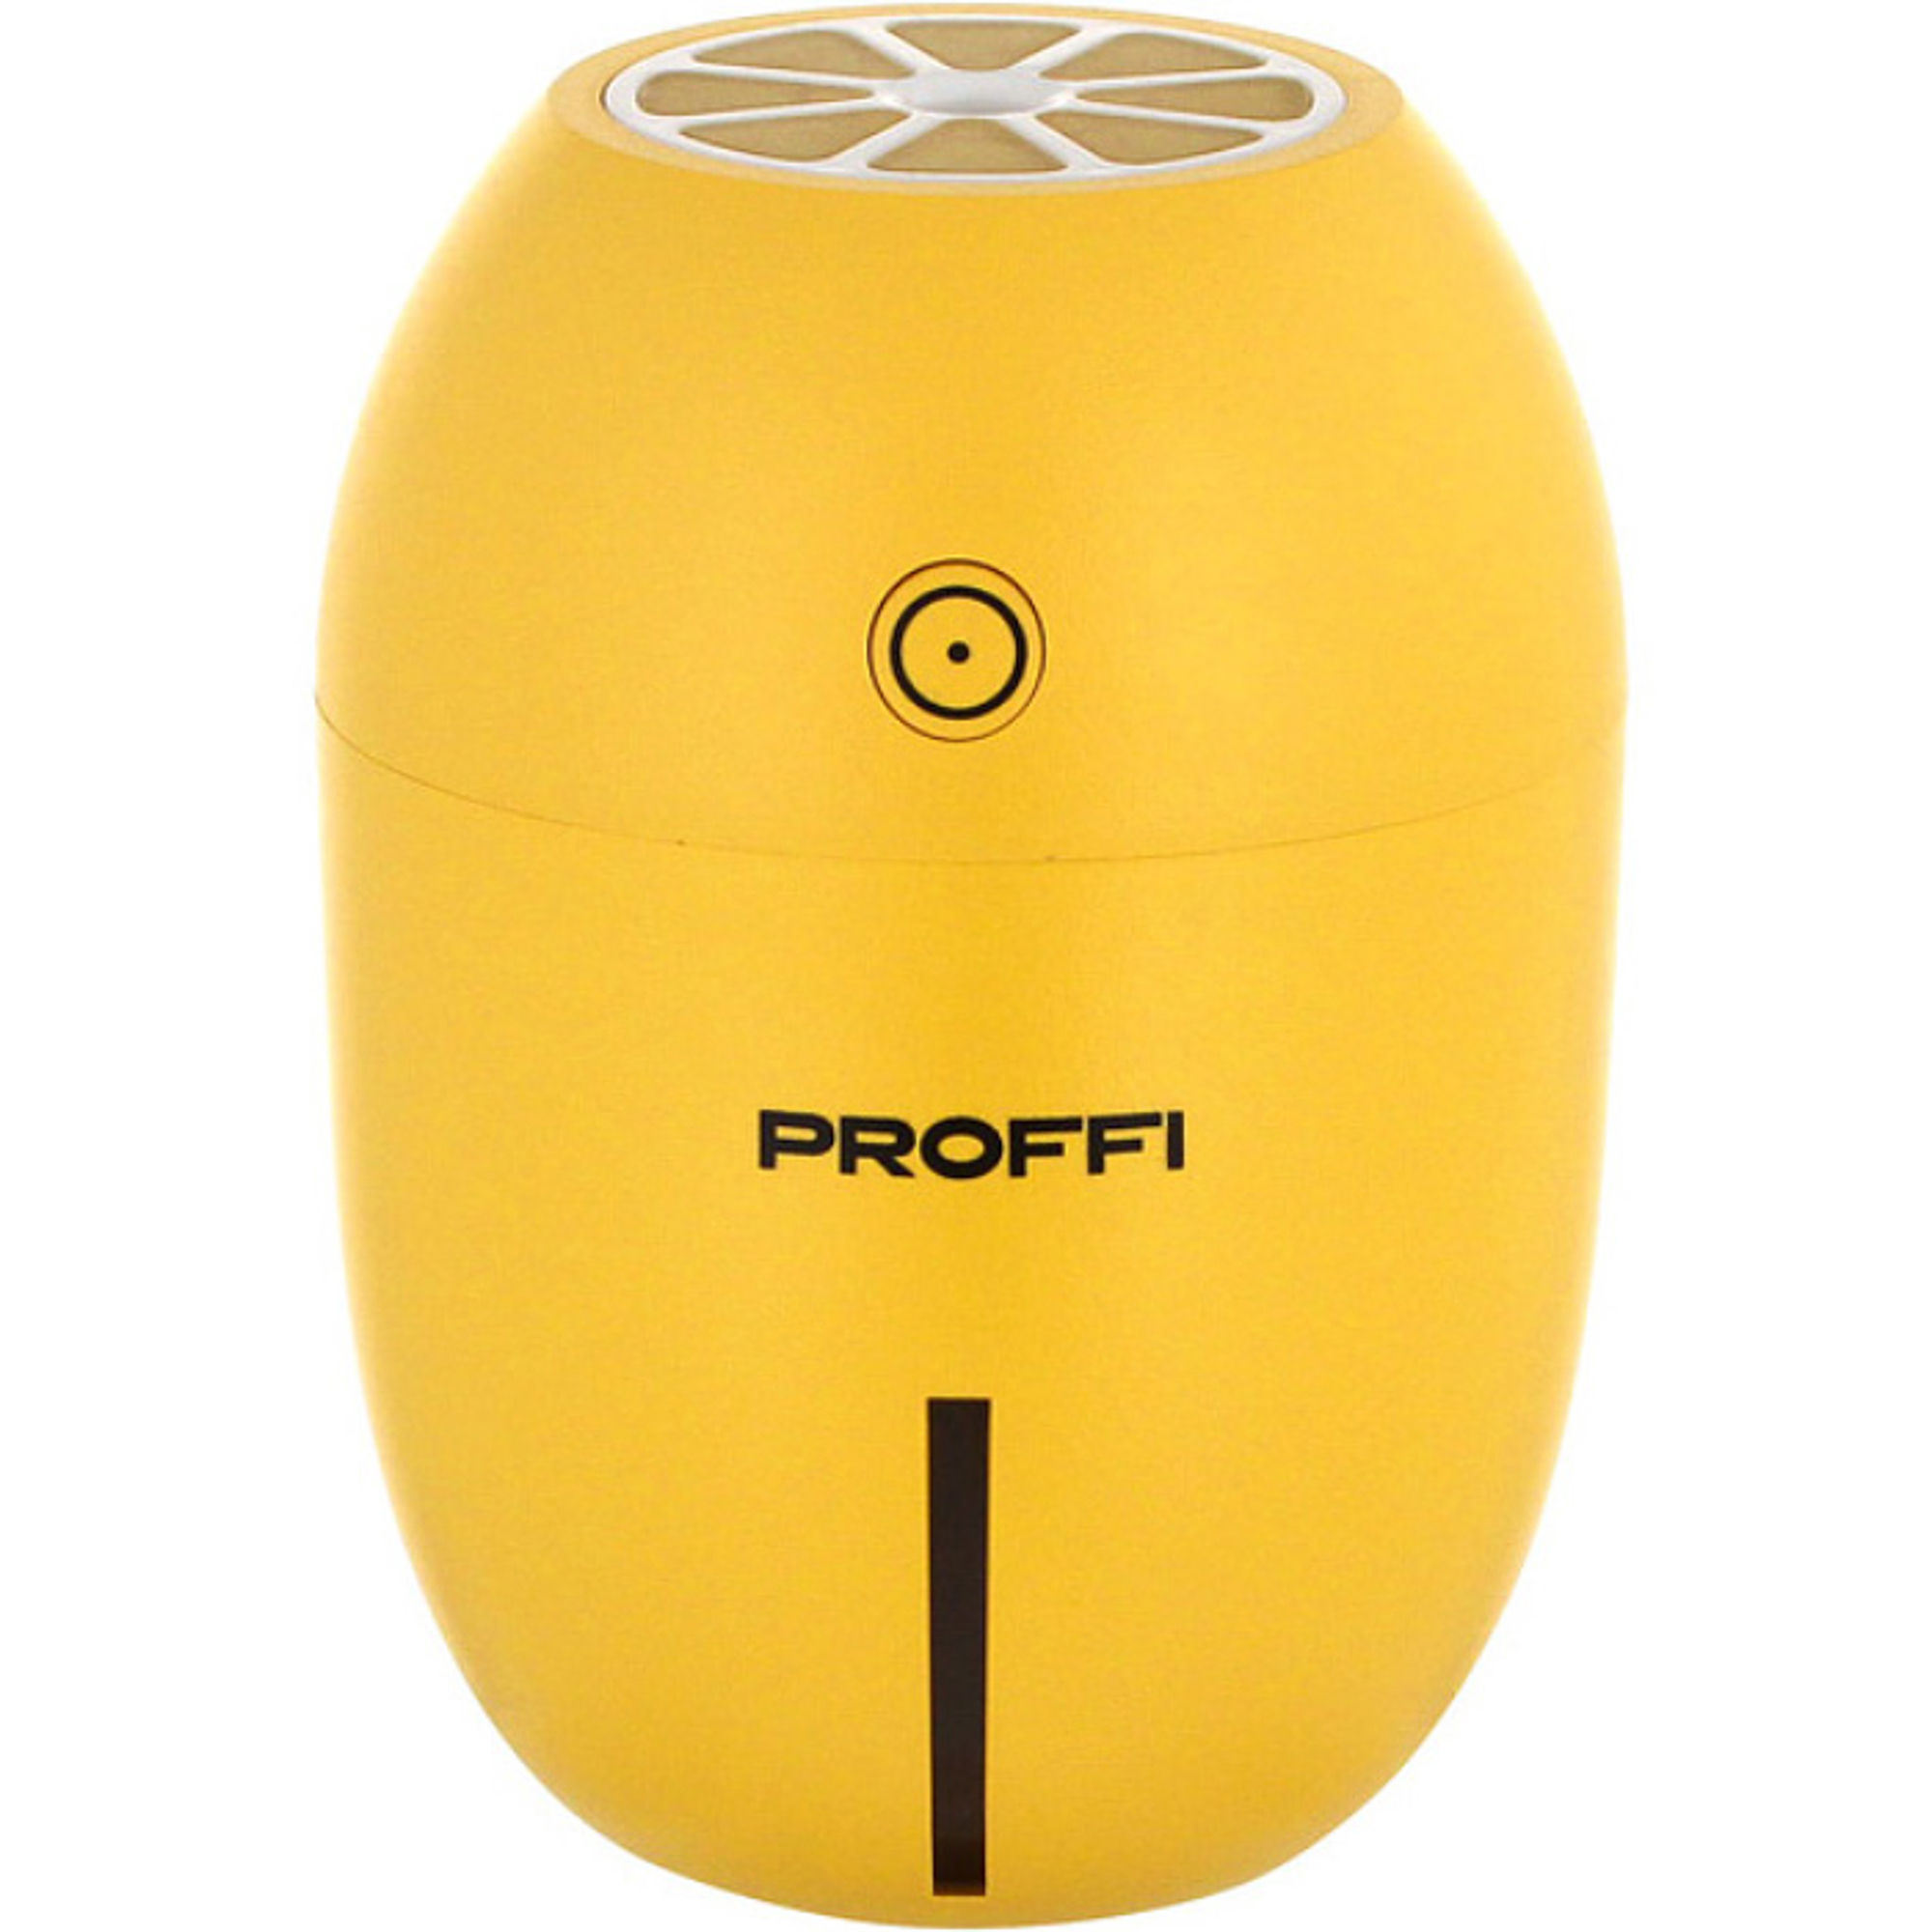 Увлажнитель воздуха Proffi PH8750 Цитрус увлажнитель воздуха proffi ph8752 style